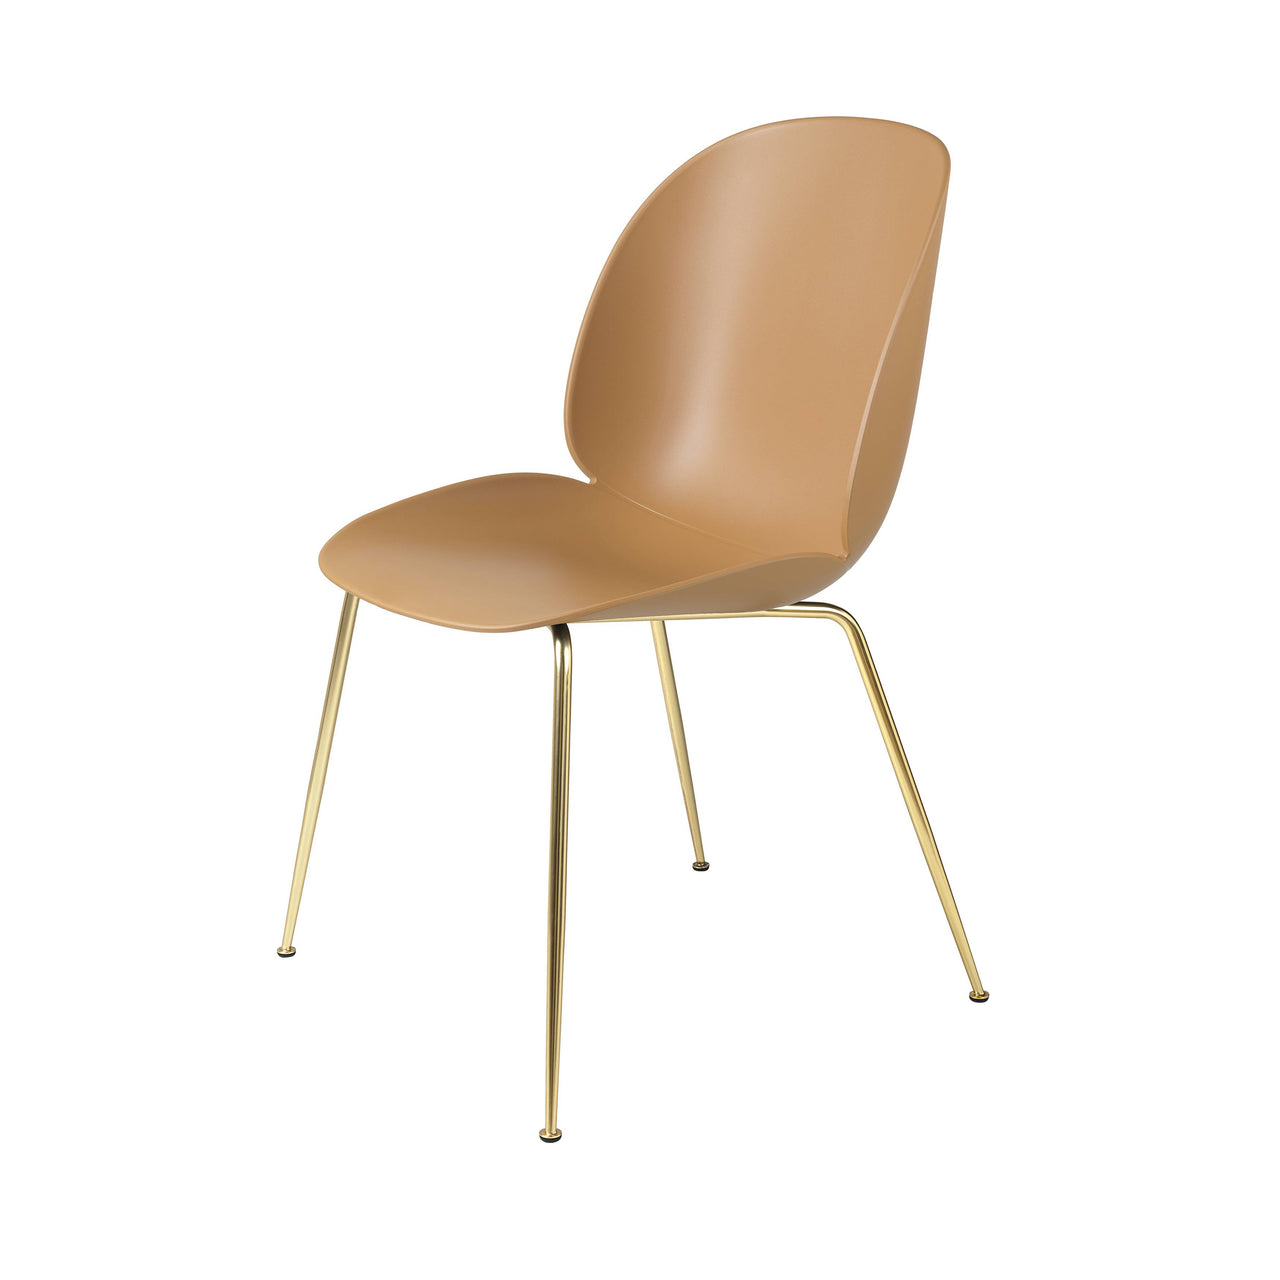 Beetle Dining Chair: Conic Base + Amber Brown + Brass Semi Matt + Felt Glides